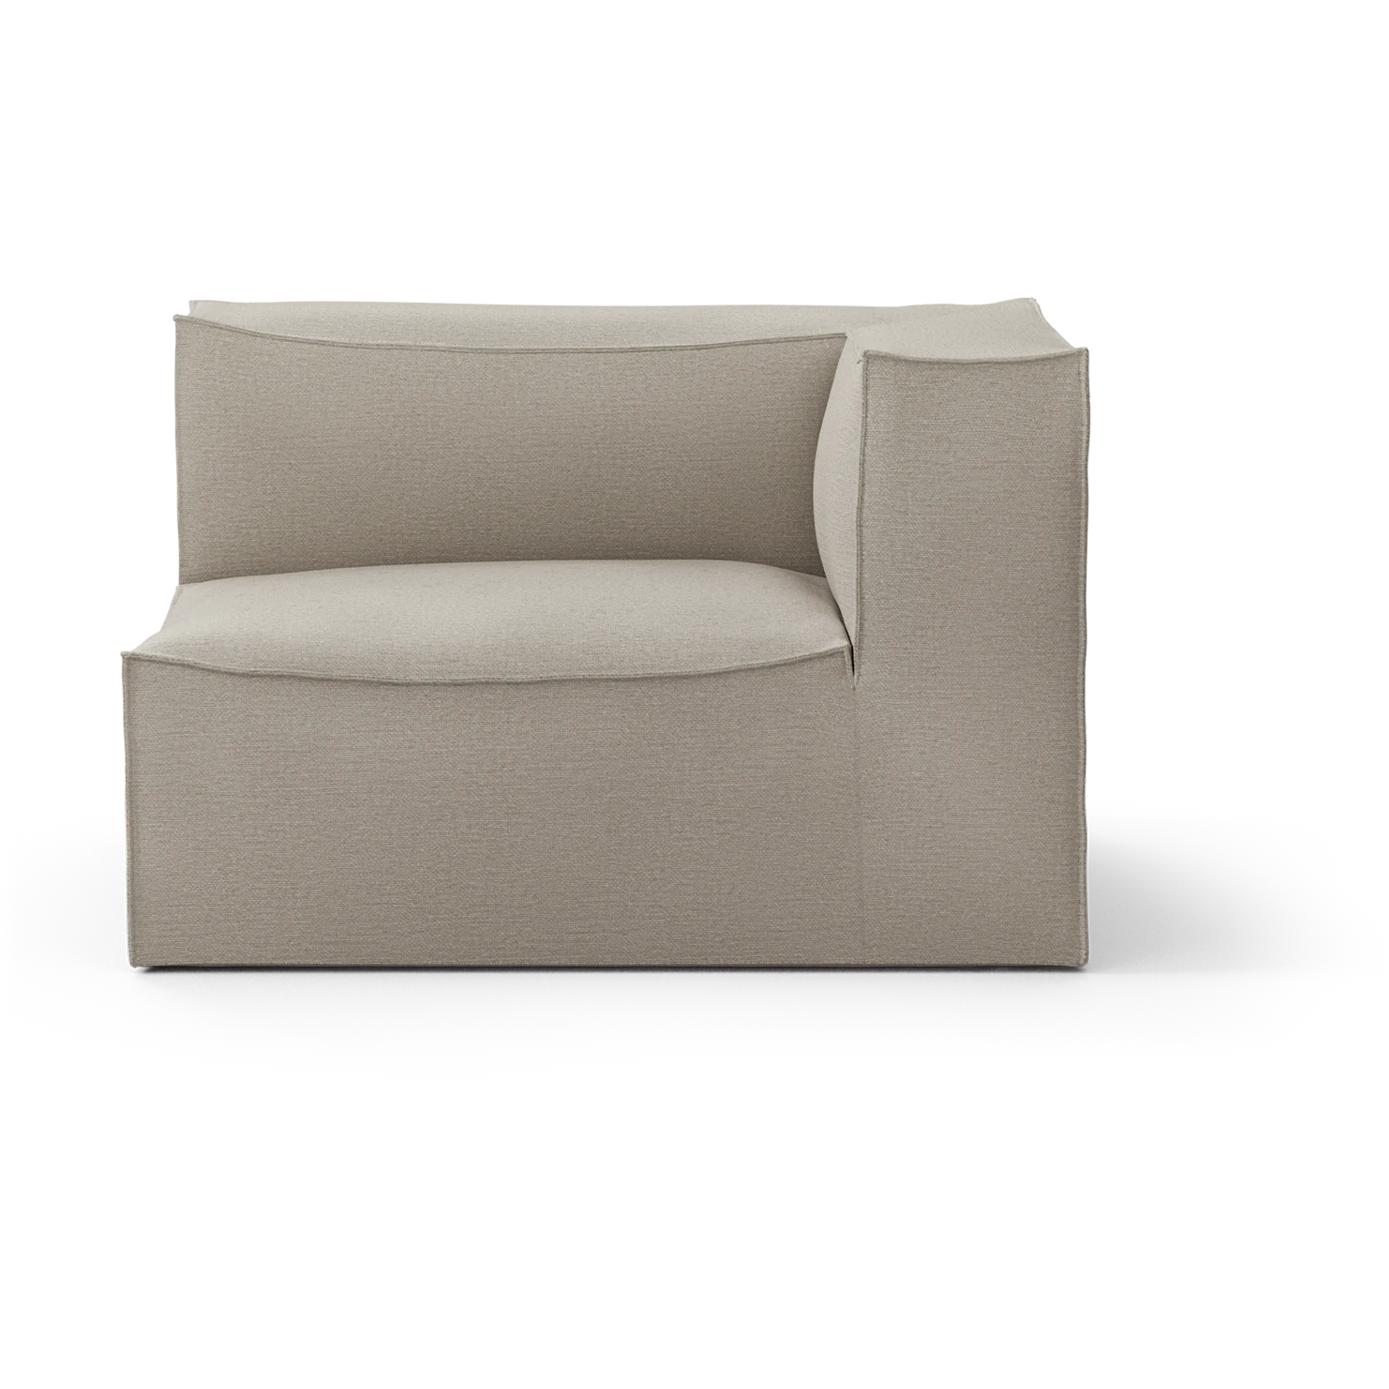 Ferm Living Catena -sohva Armmaa oikea S401 puuvilla liinavaatteet, luonnollinen